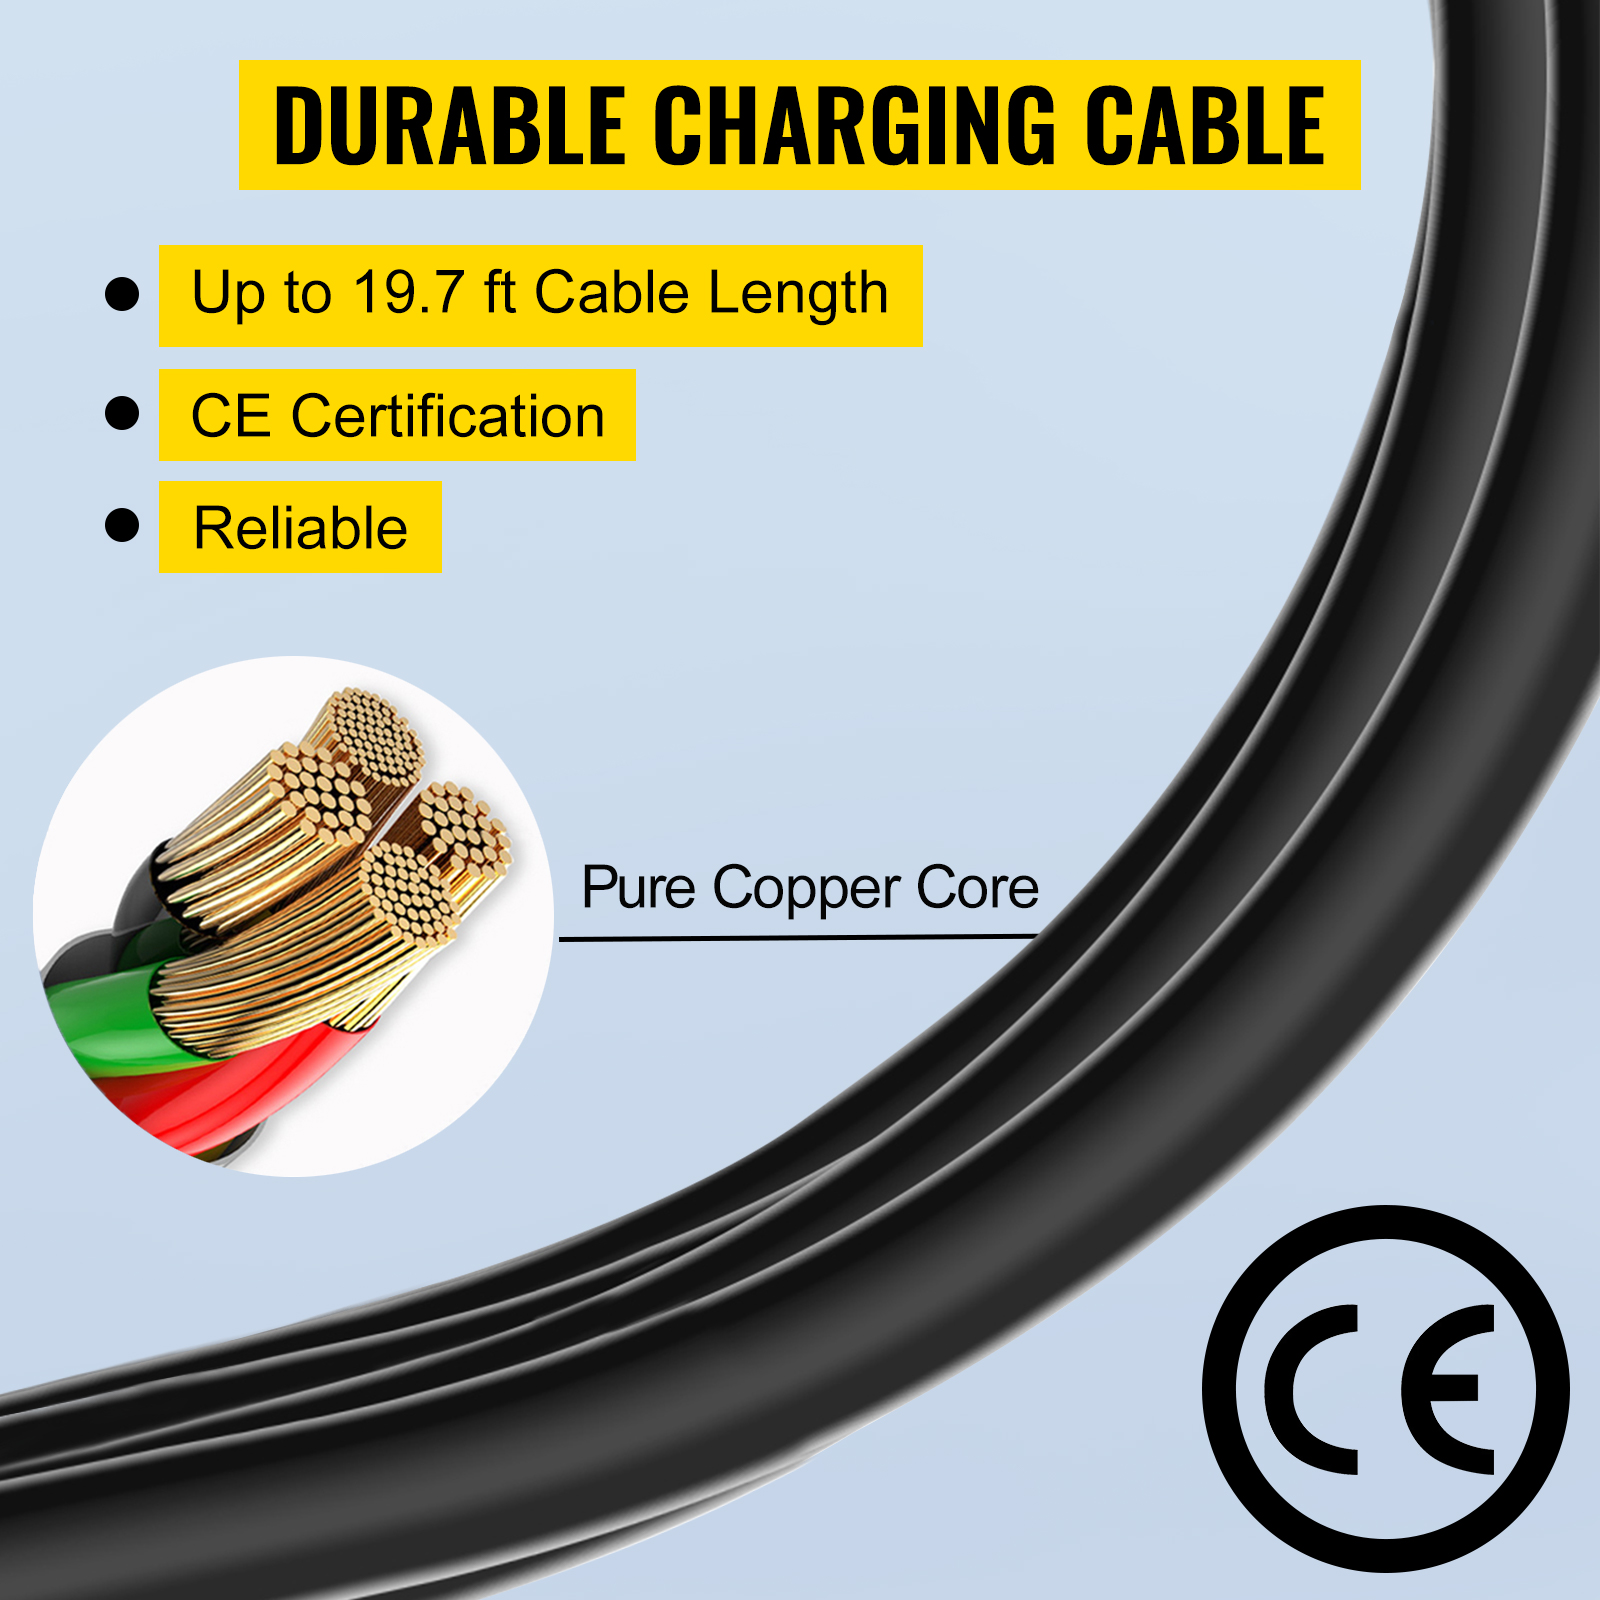 Зарядний кабель для електромобілів VEVOR 10 А для стандарту ЄС, 6-метрова зарядна станція для електромобіля з 3-контактним штекером Schuko, електромобіль 2,3 кВт, з'єднання 250 В IP54 з цифровим РК-екраном та сертифікатом CE